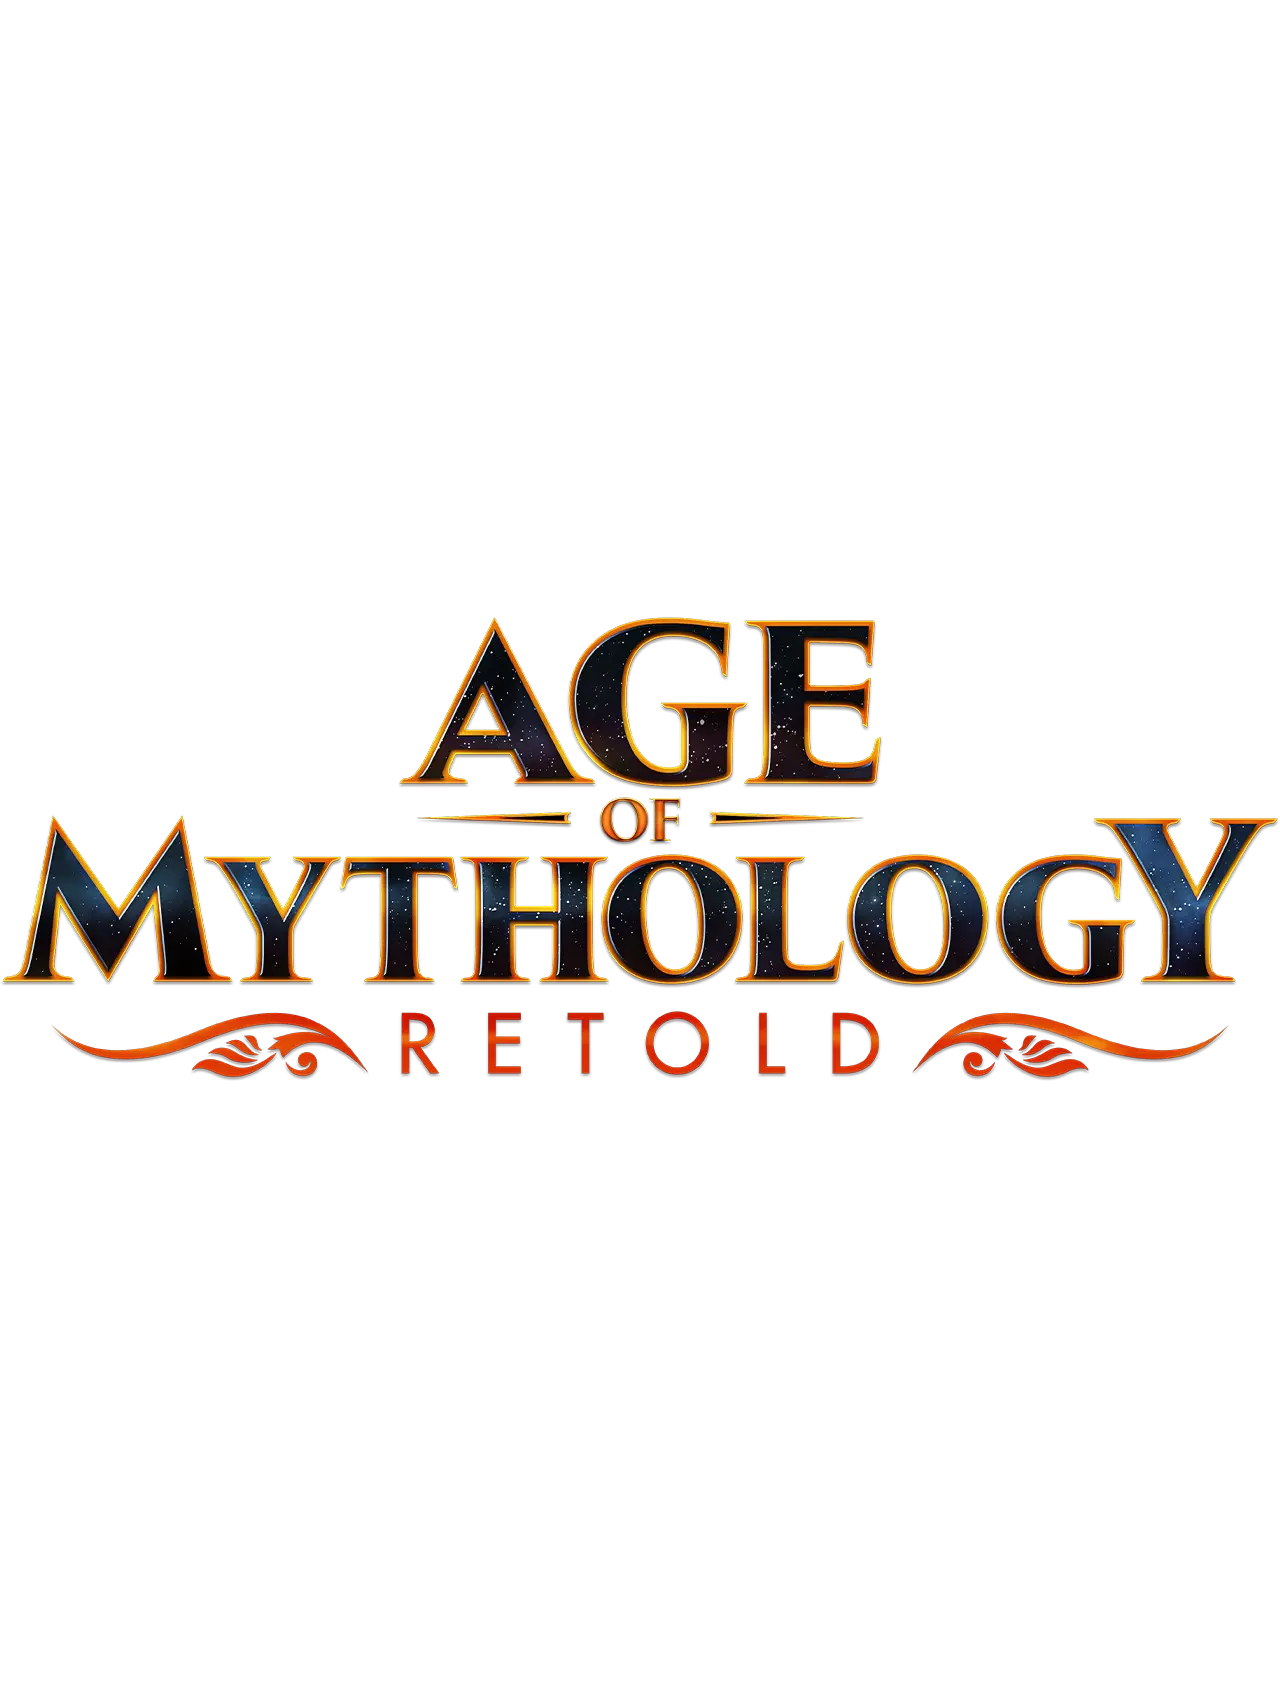 Age of Mythology: Retold title logo